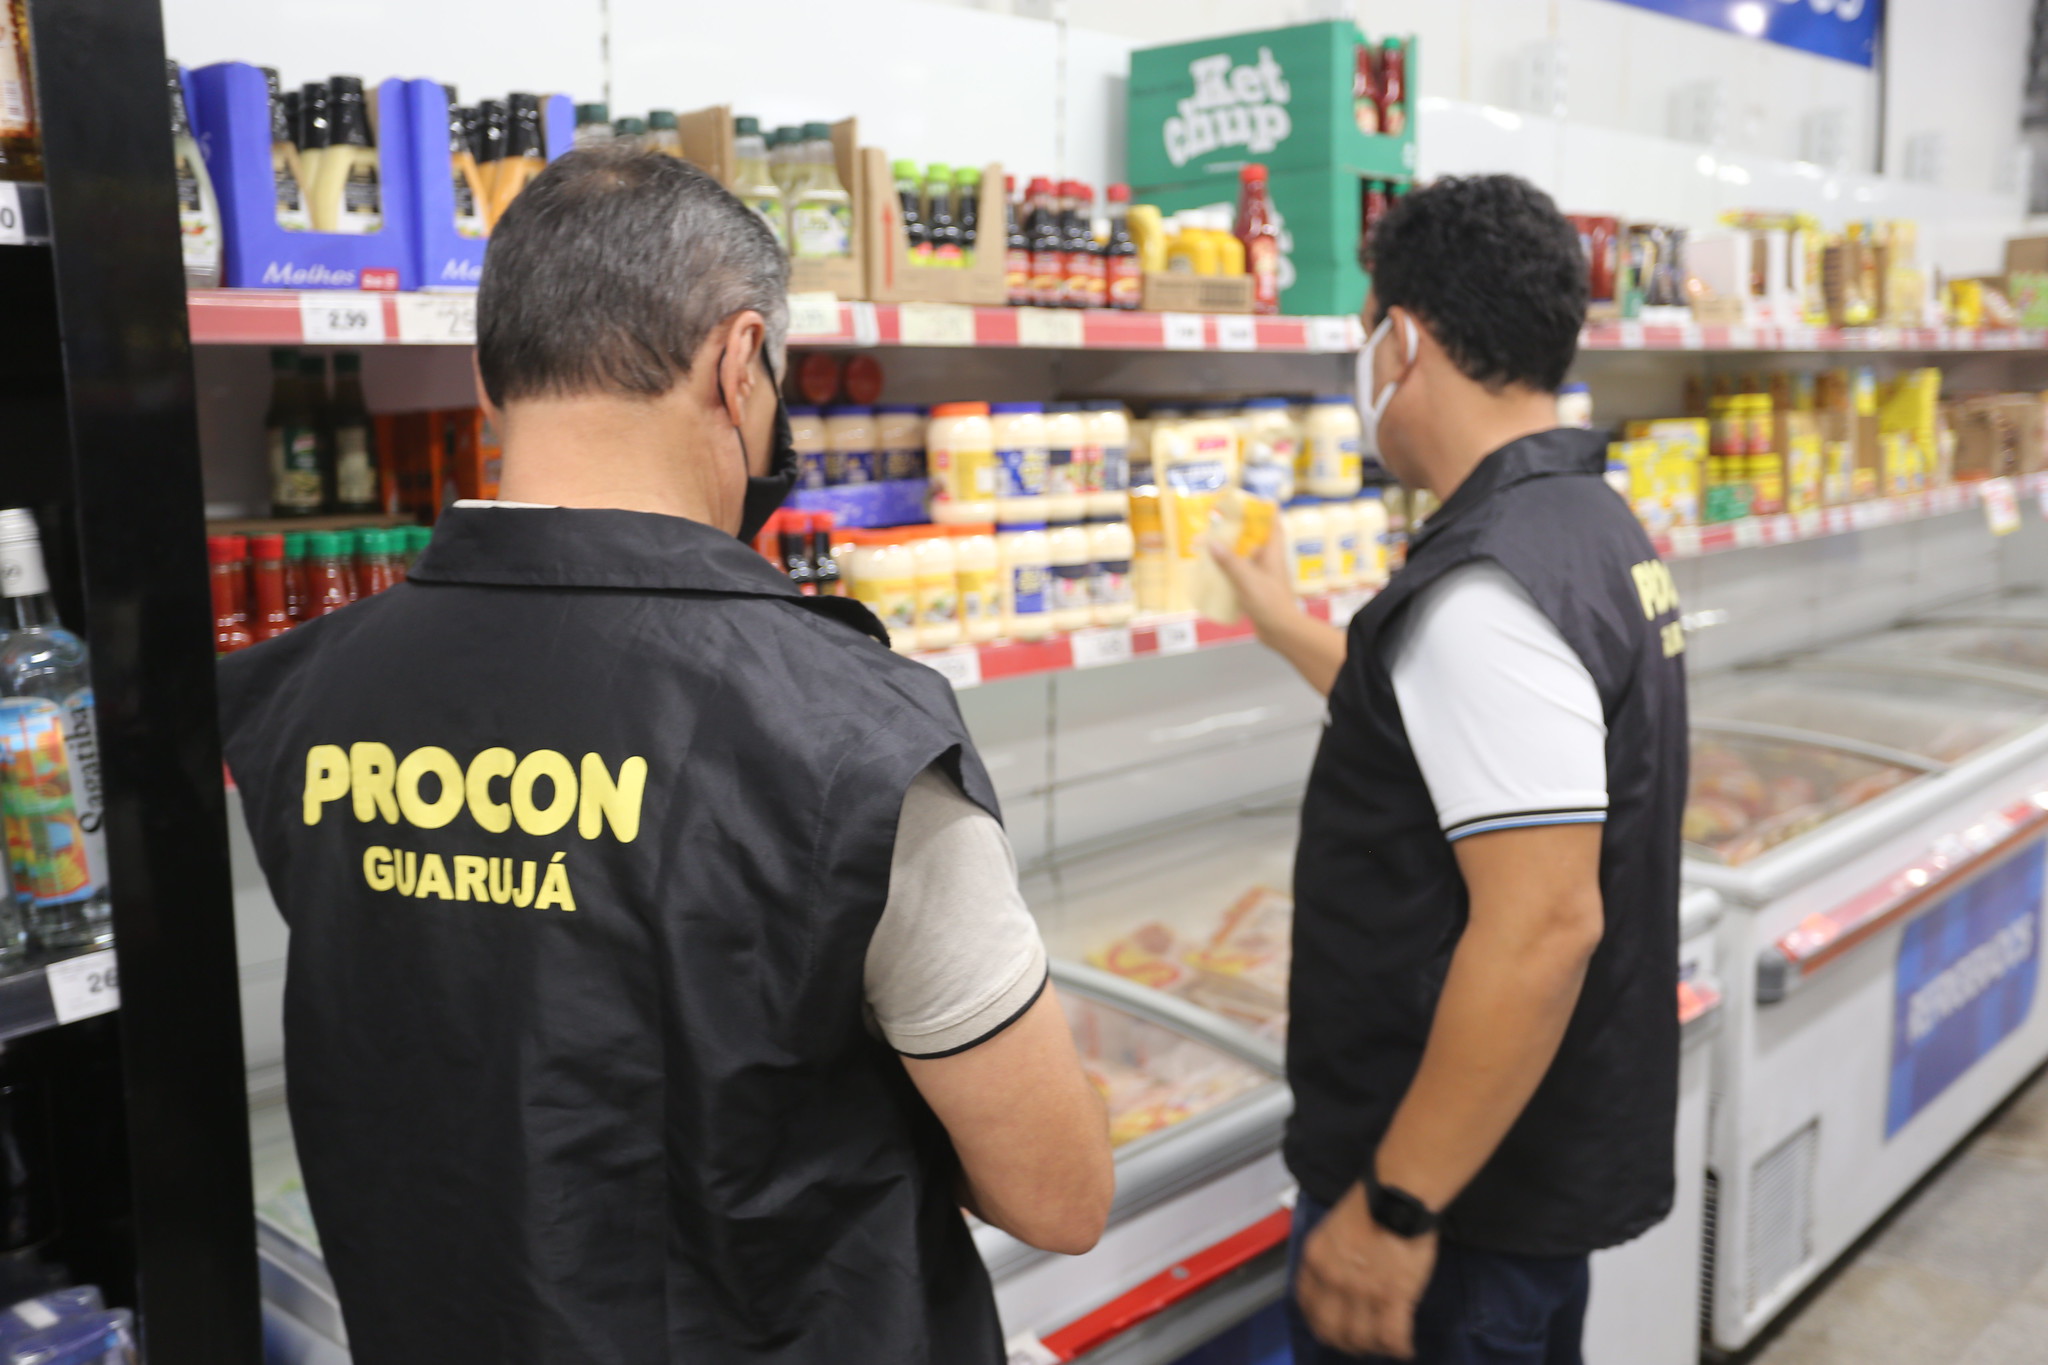 Procon Guarujá realiza Operação ‘De Olho no Mercado’ a partir de segunda-feira (26)